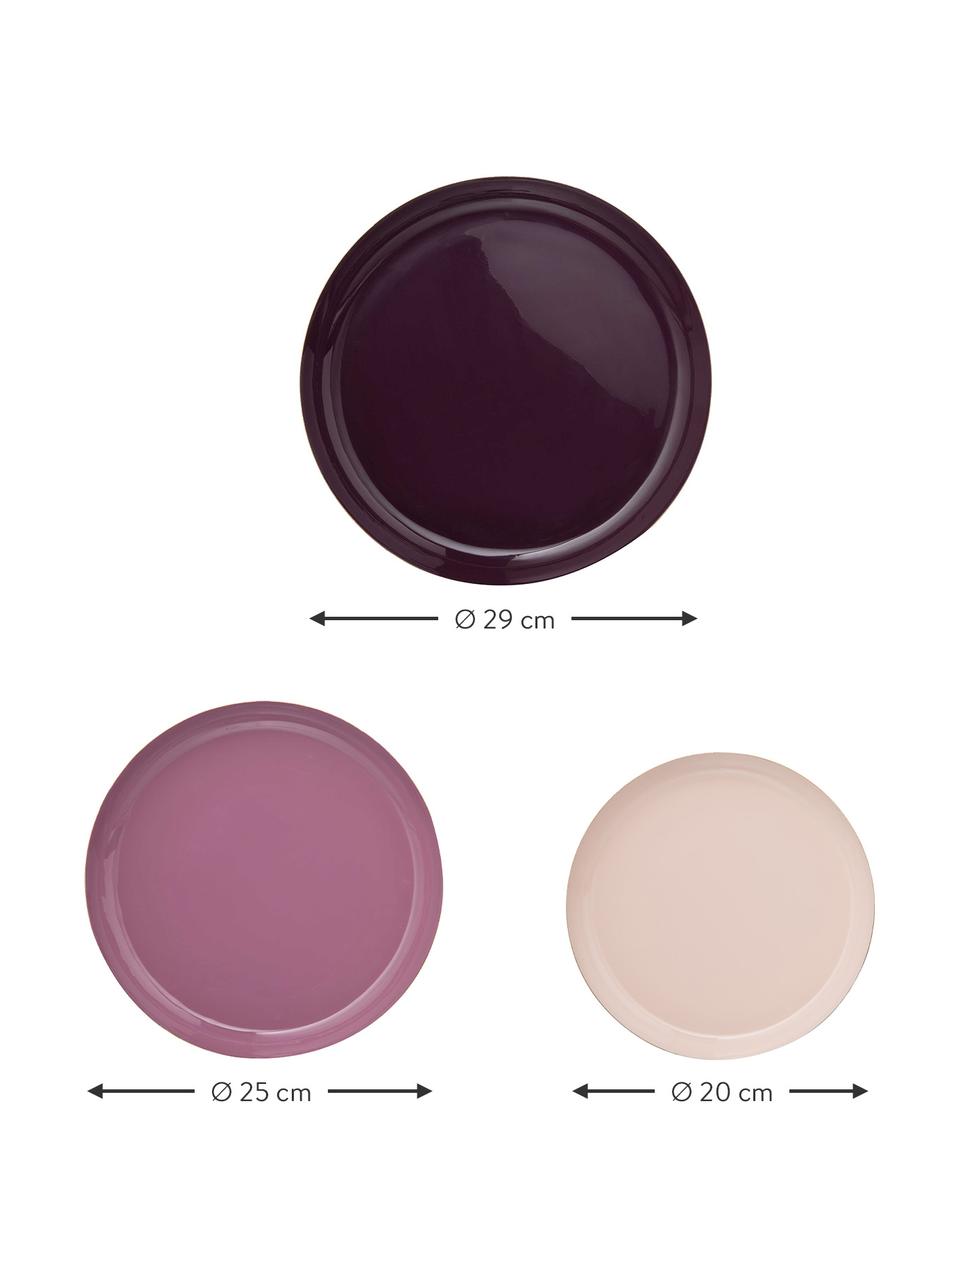 Deko-Tablett-Set Minella, 3-tlg., Metall, lackiert, Lila, Pink, RosaRand: Goldfarben, Set mit verschiedenen Größen